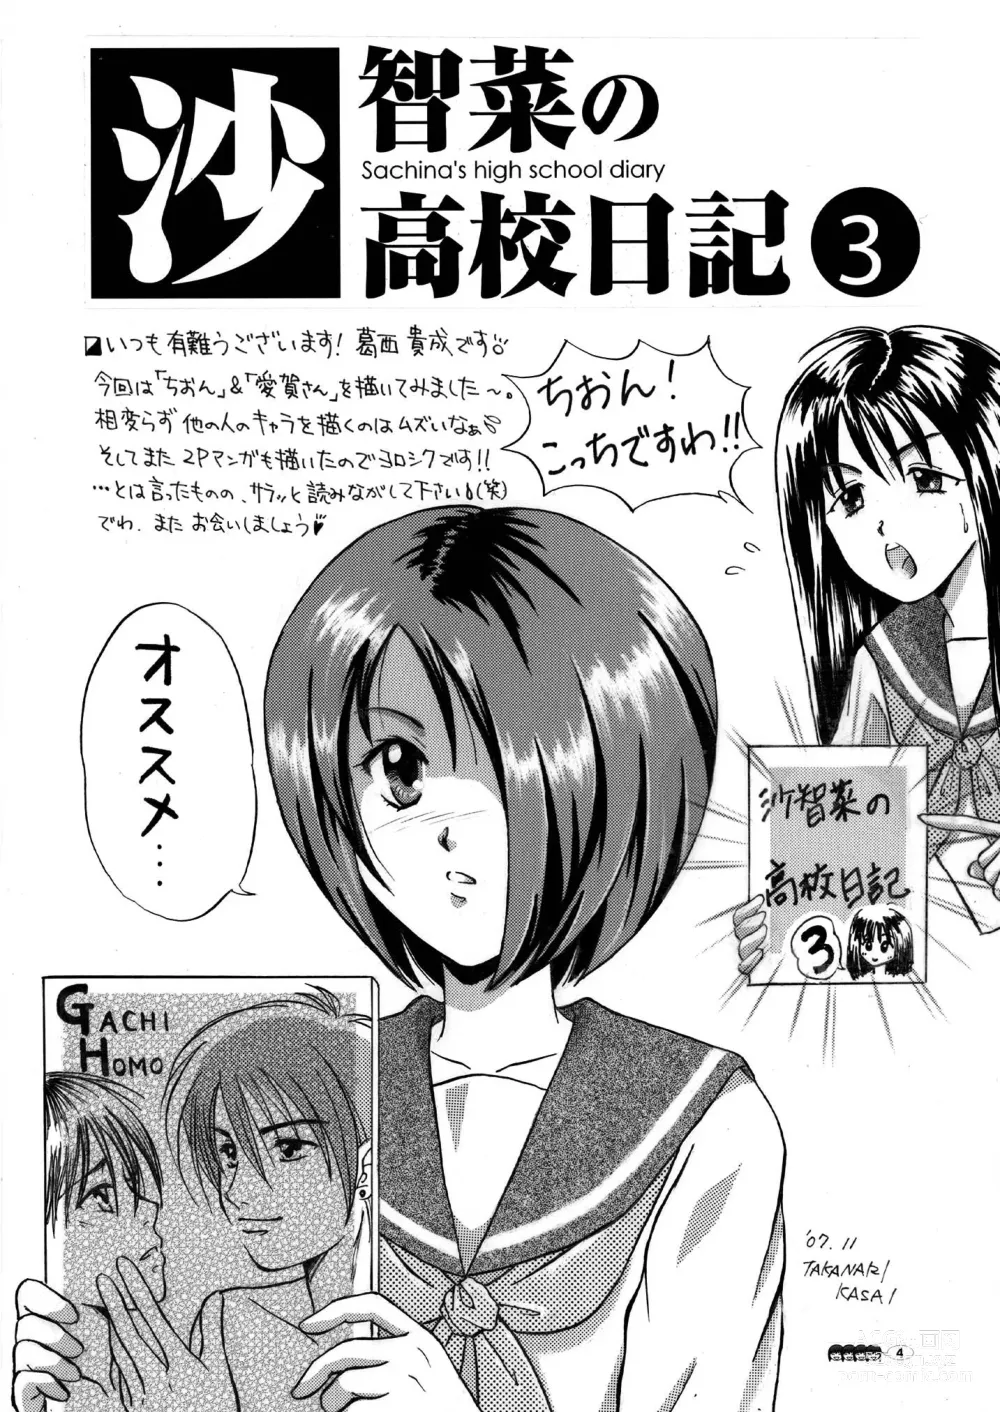 Page 4 of doujinshi Sachina no Koukou Nikki 3